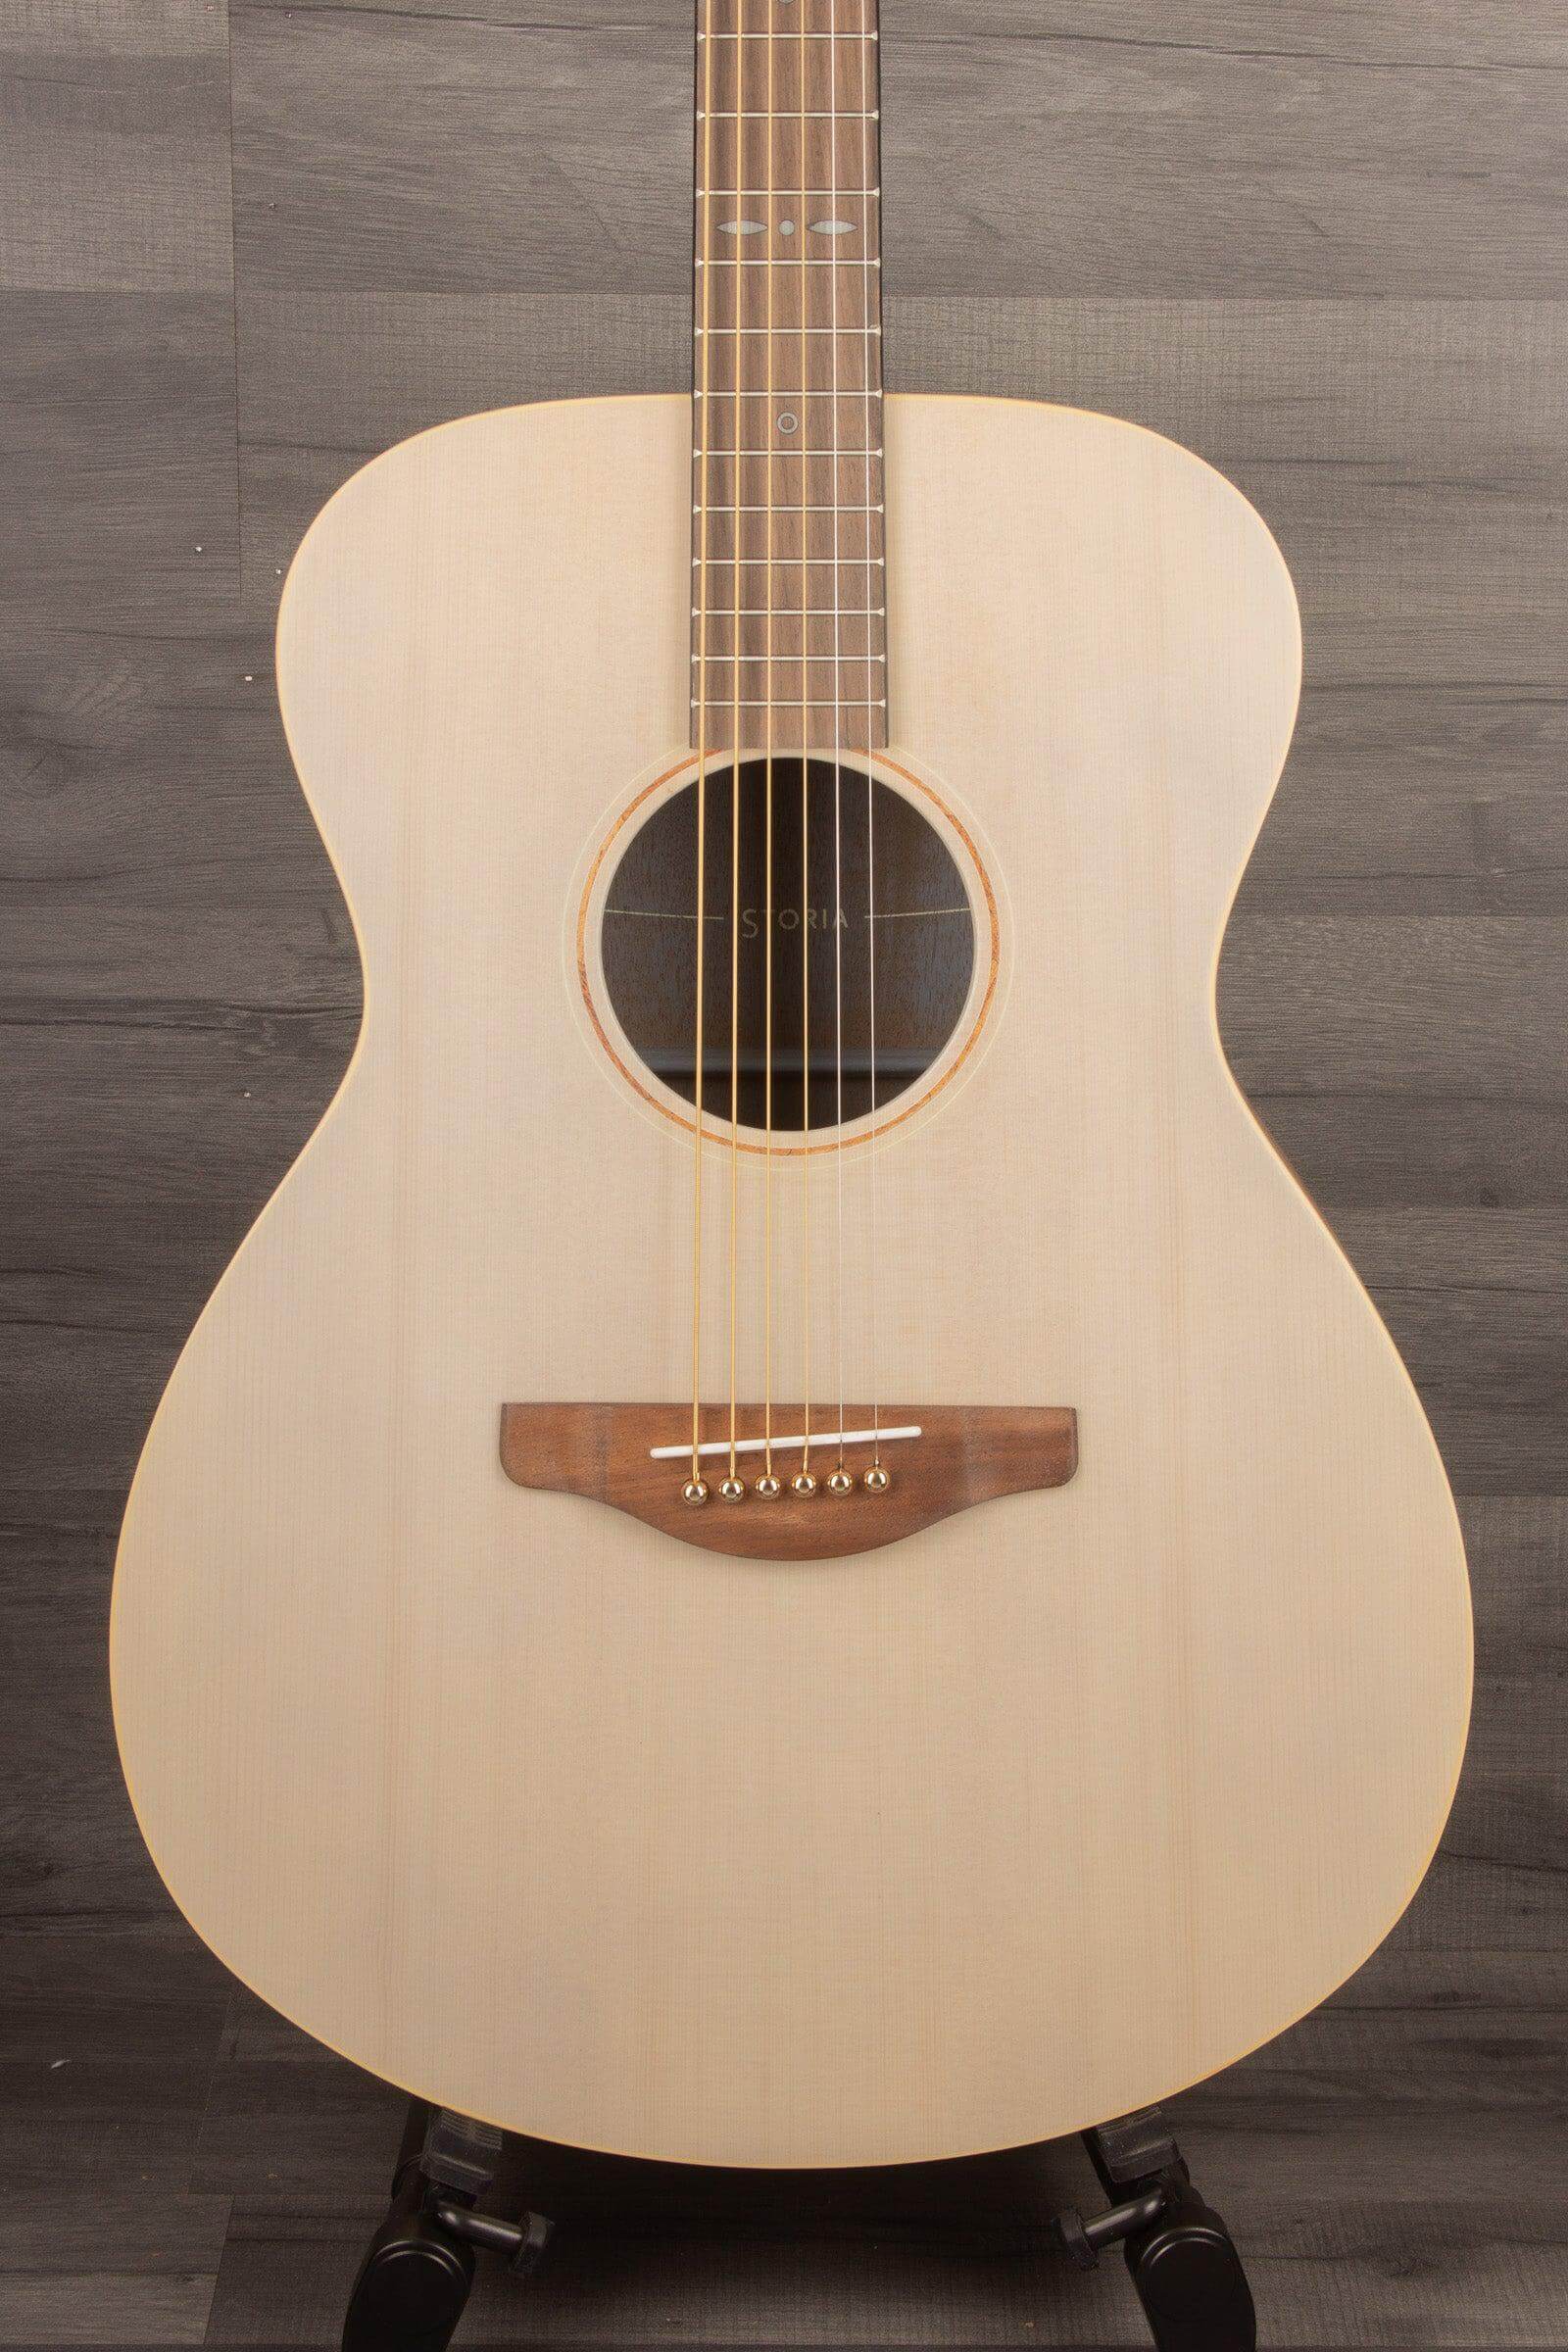 Yamaha Storia I Acoustic Guitar, Off-White - MusicStreet